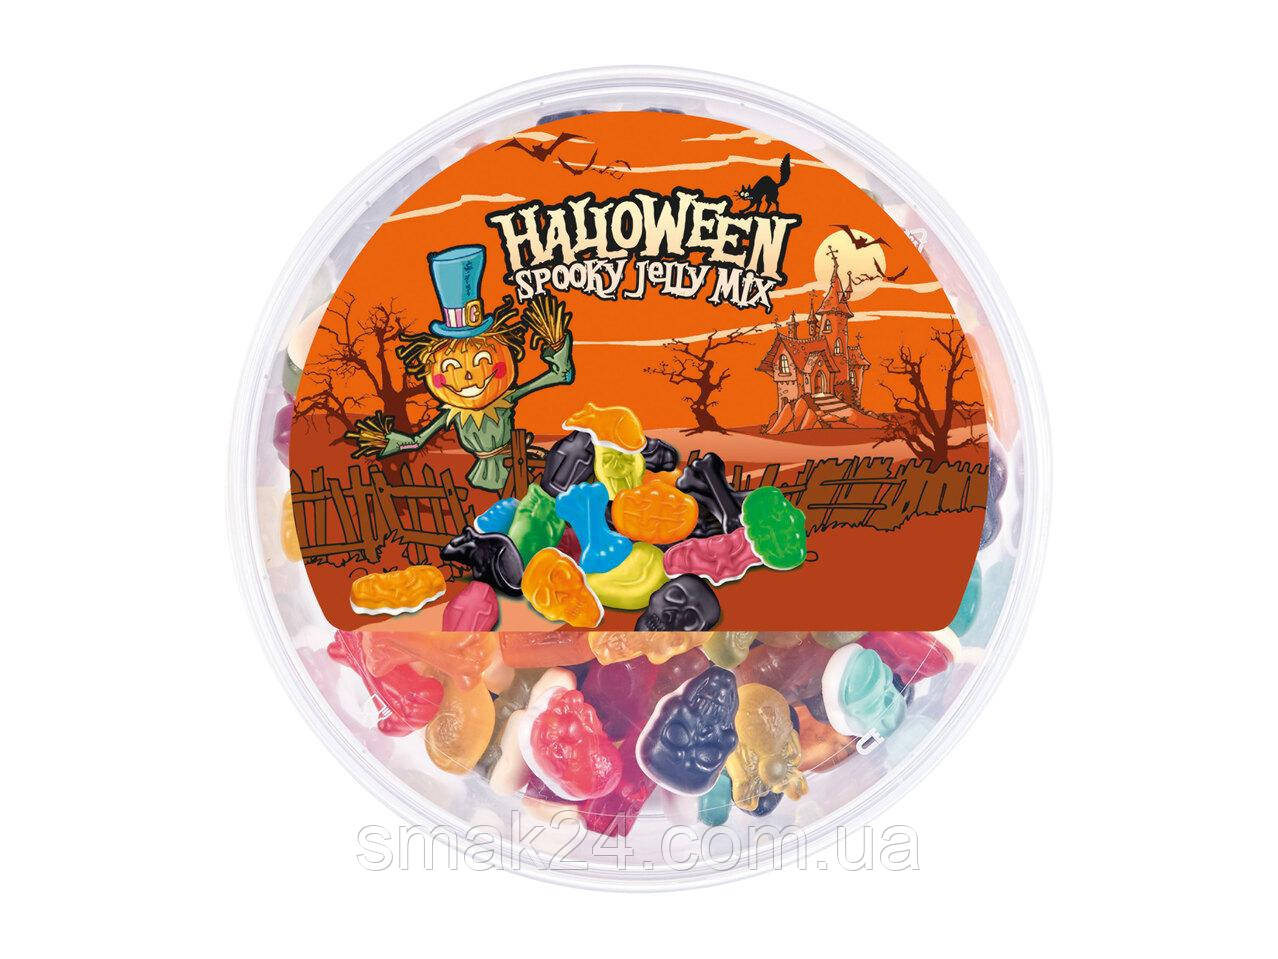 Желейні цукерки із фруктовим смаком Halloween Spooky Jelly Mix 1000г Польща, фото 1